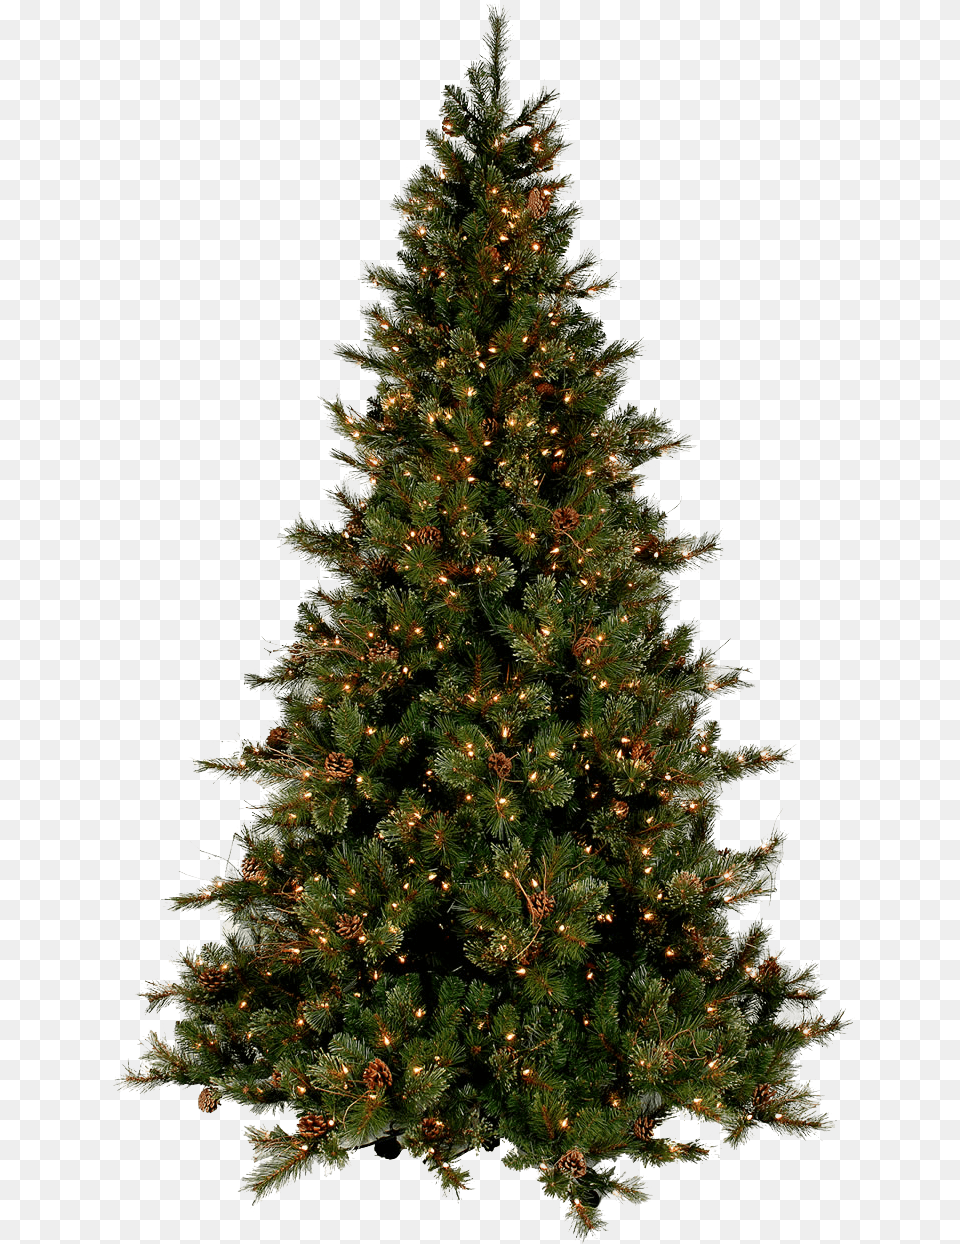 Image, Plant, Tree, Pine, Christmas Free Png